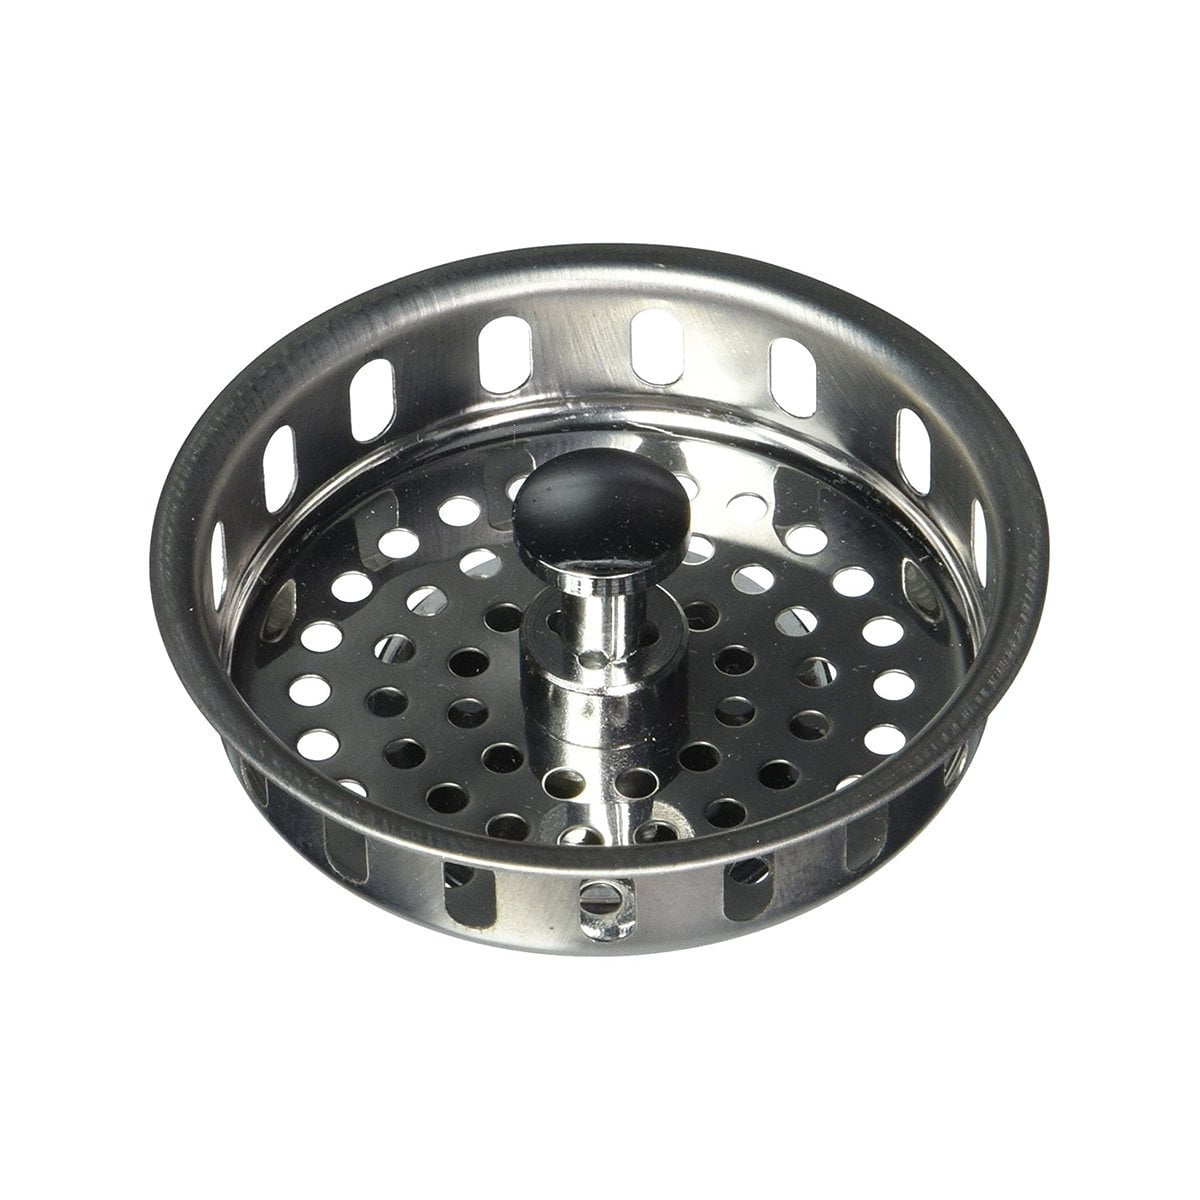 Kitchen Sink Strainer Basket Replacement